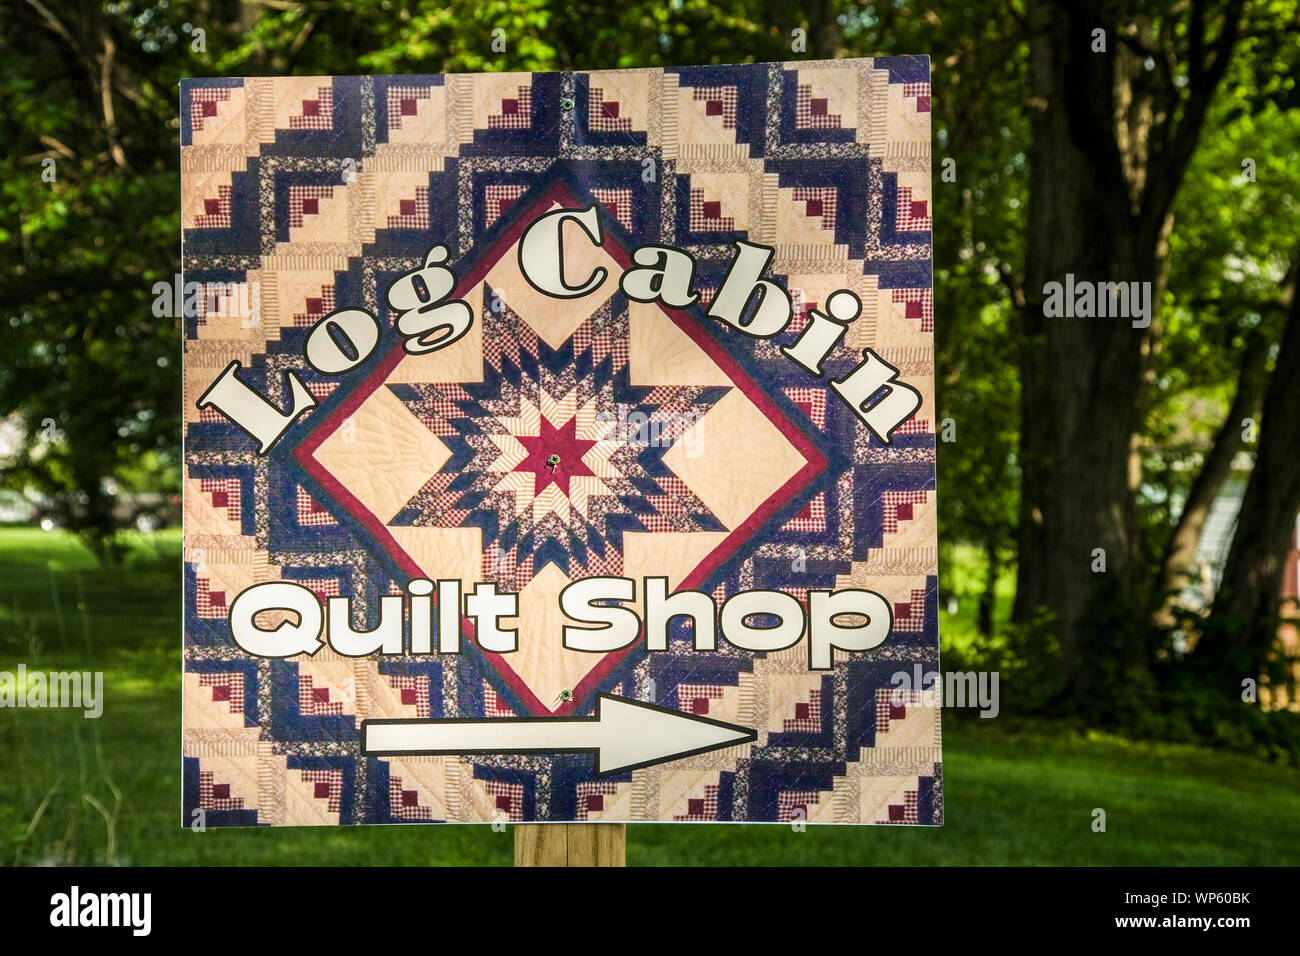 Log Cabin Quilt Shop, Quilt Schild, Lancaster Co., Pennsylvania, Schild, USA, vintage ad kreative Werbung vintage Zeichen Stockfoto